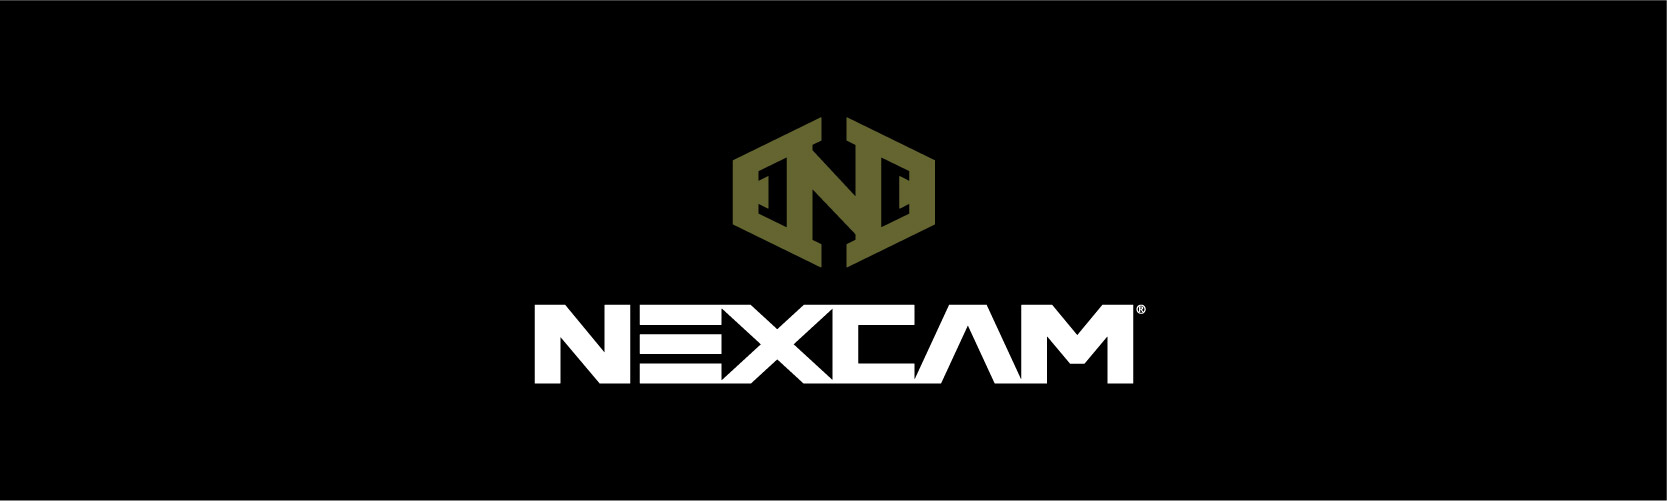 Nexcam logo